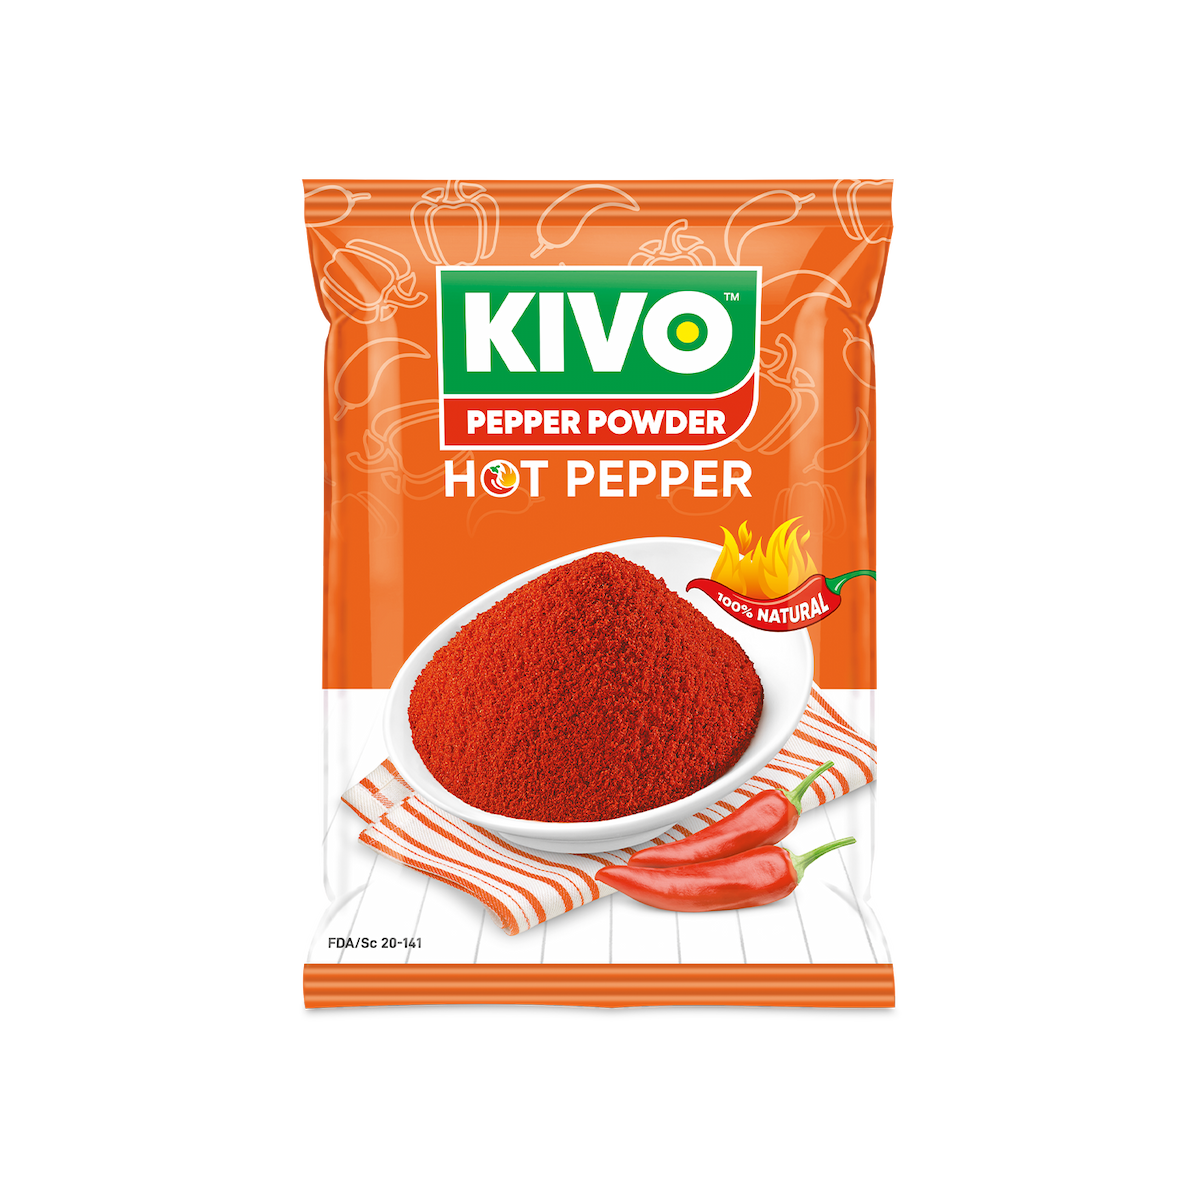 KIVO HOT PEPPER POWDER